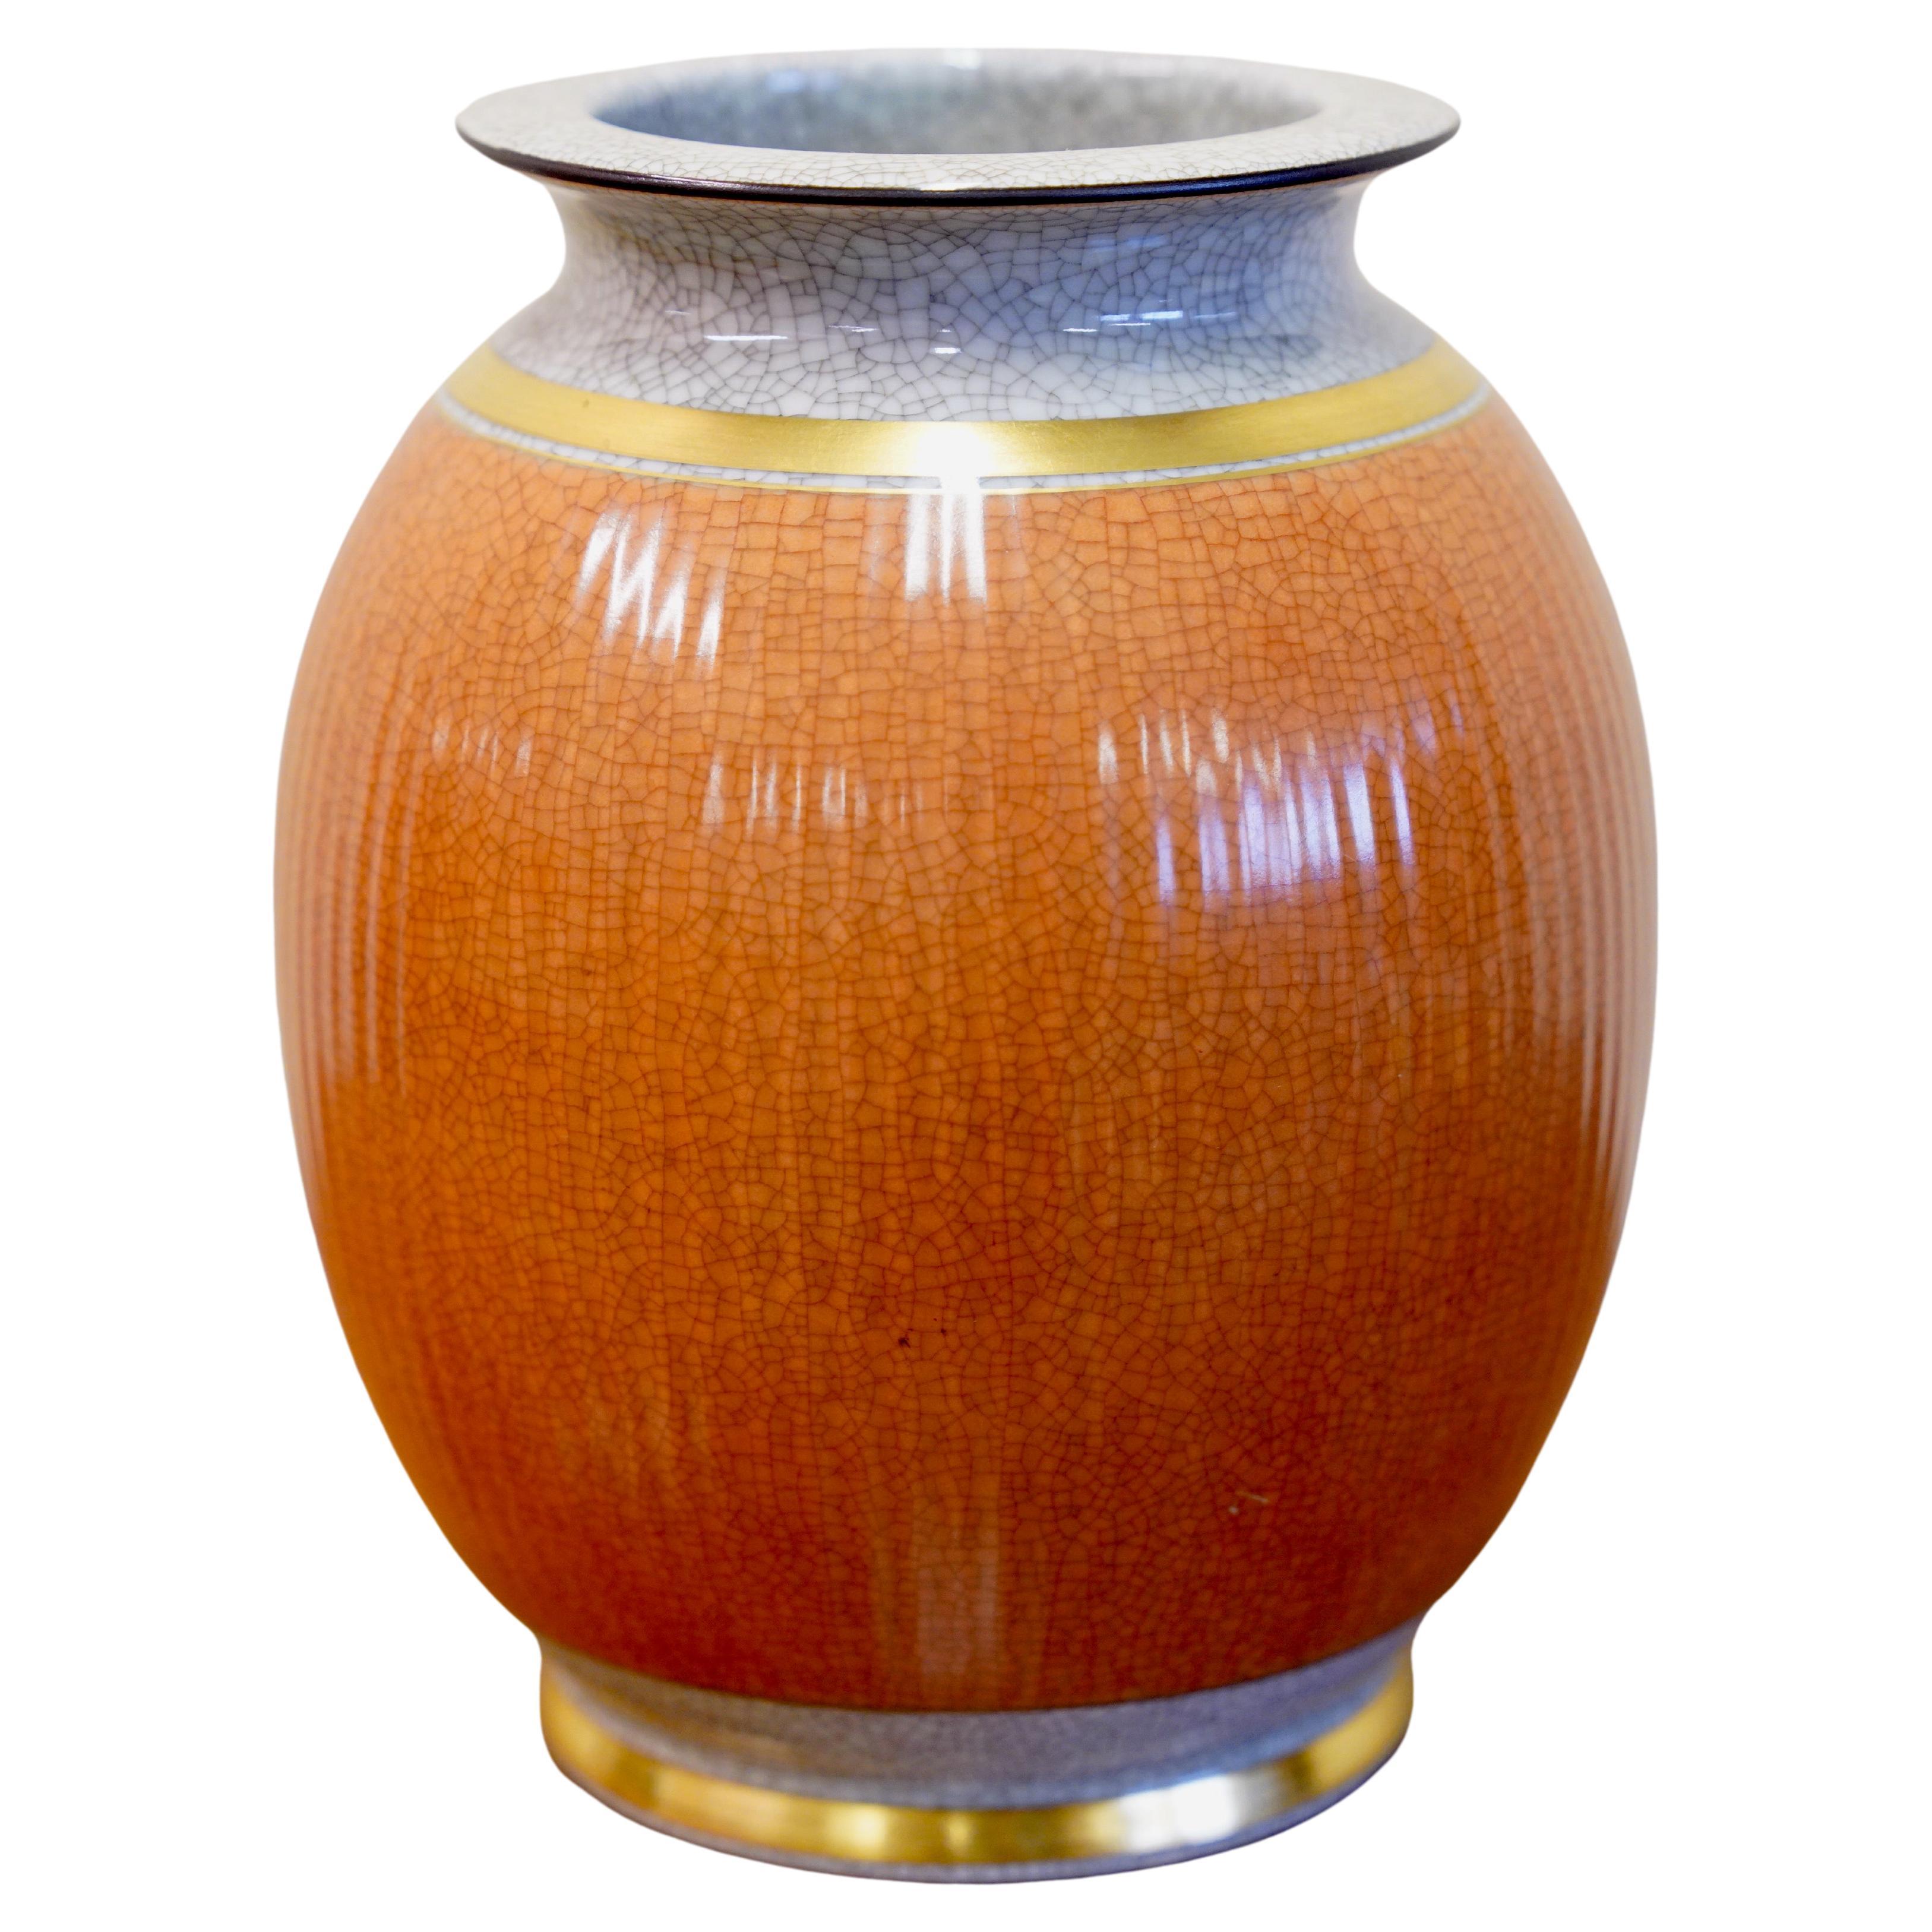 Vintage Vase by Royal Copenhagen, Porcelain with Crackle Glaze, Scandinavian Art